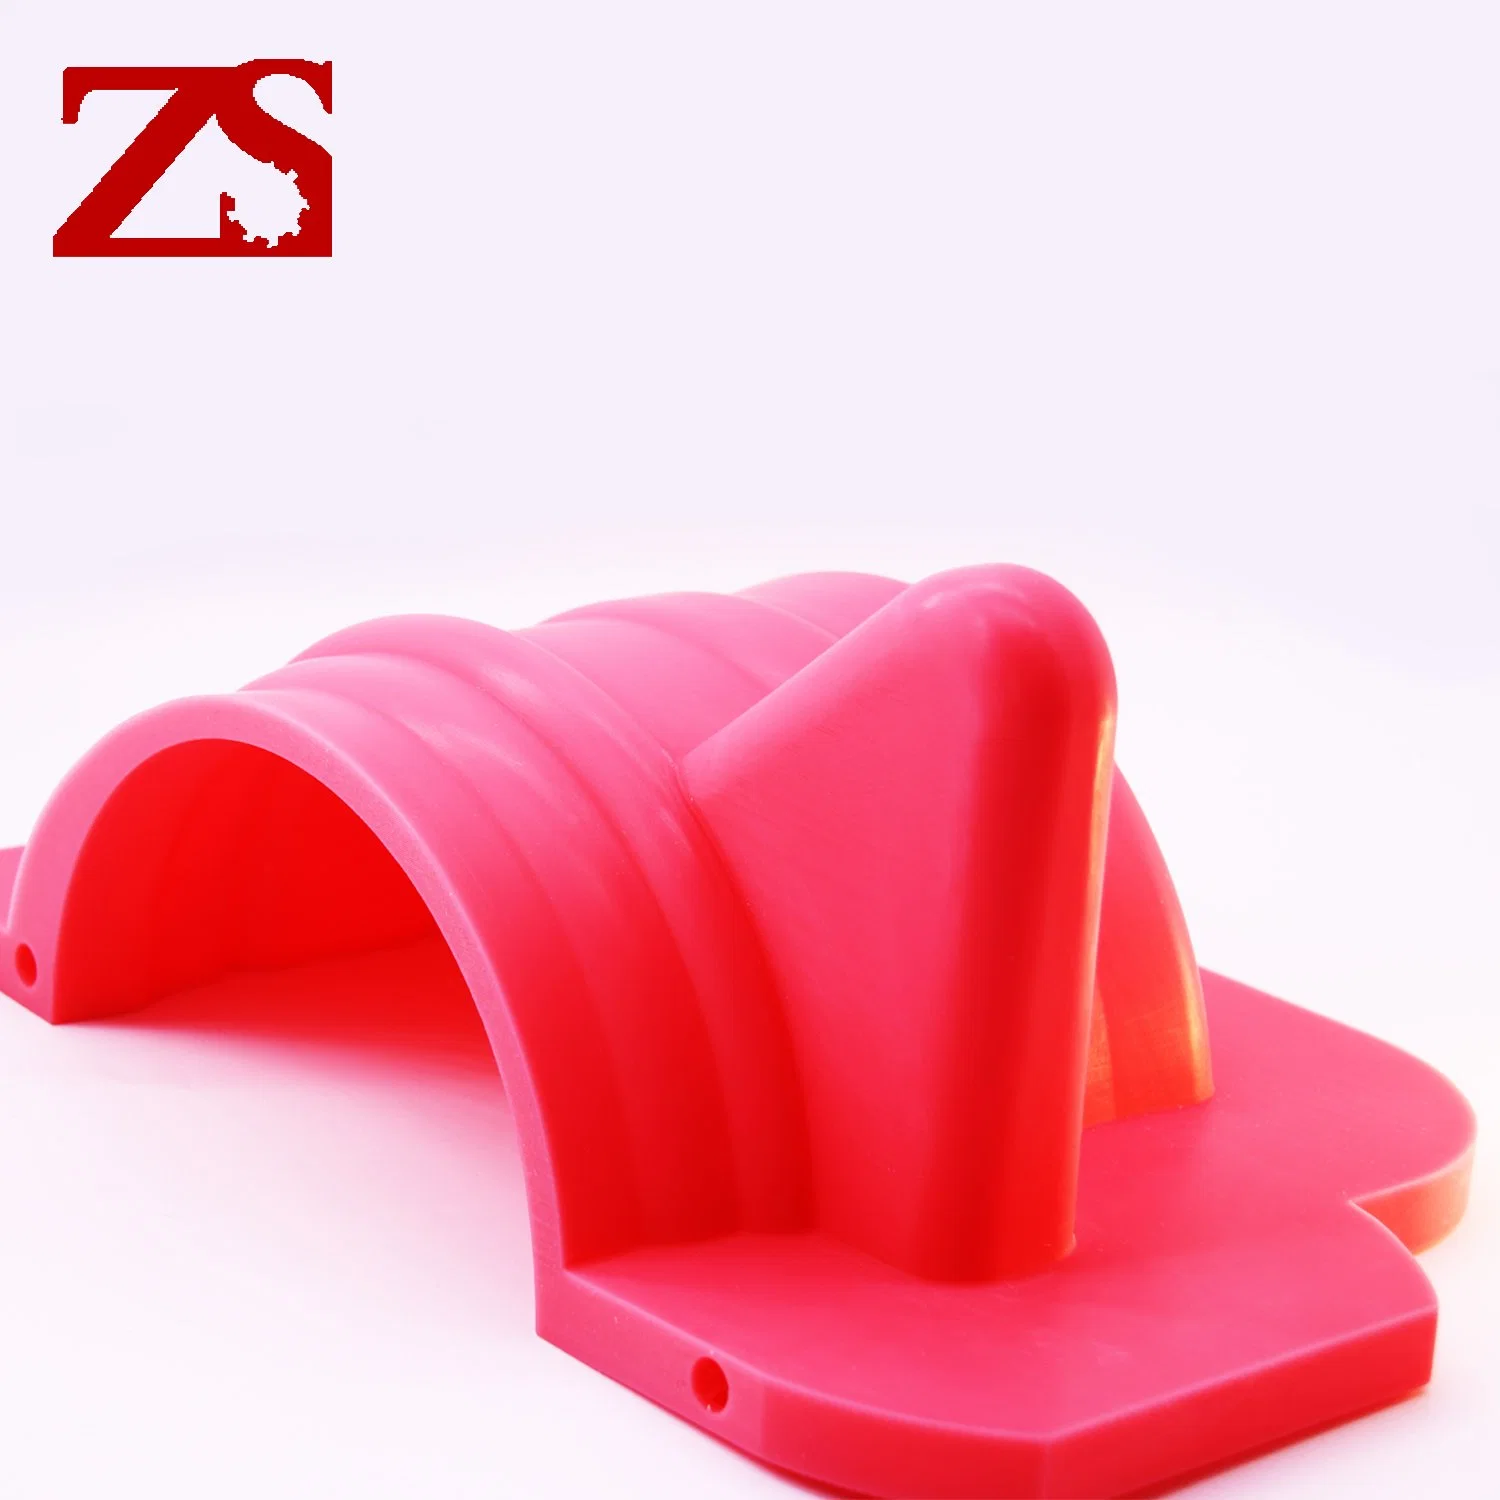 Hohe Genauigkeit Industrial China Zs SLA 3D Drucker drucken schnell Prototyp